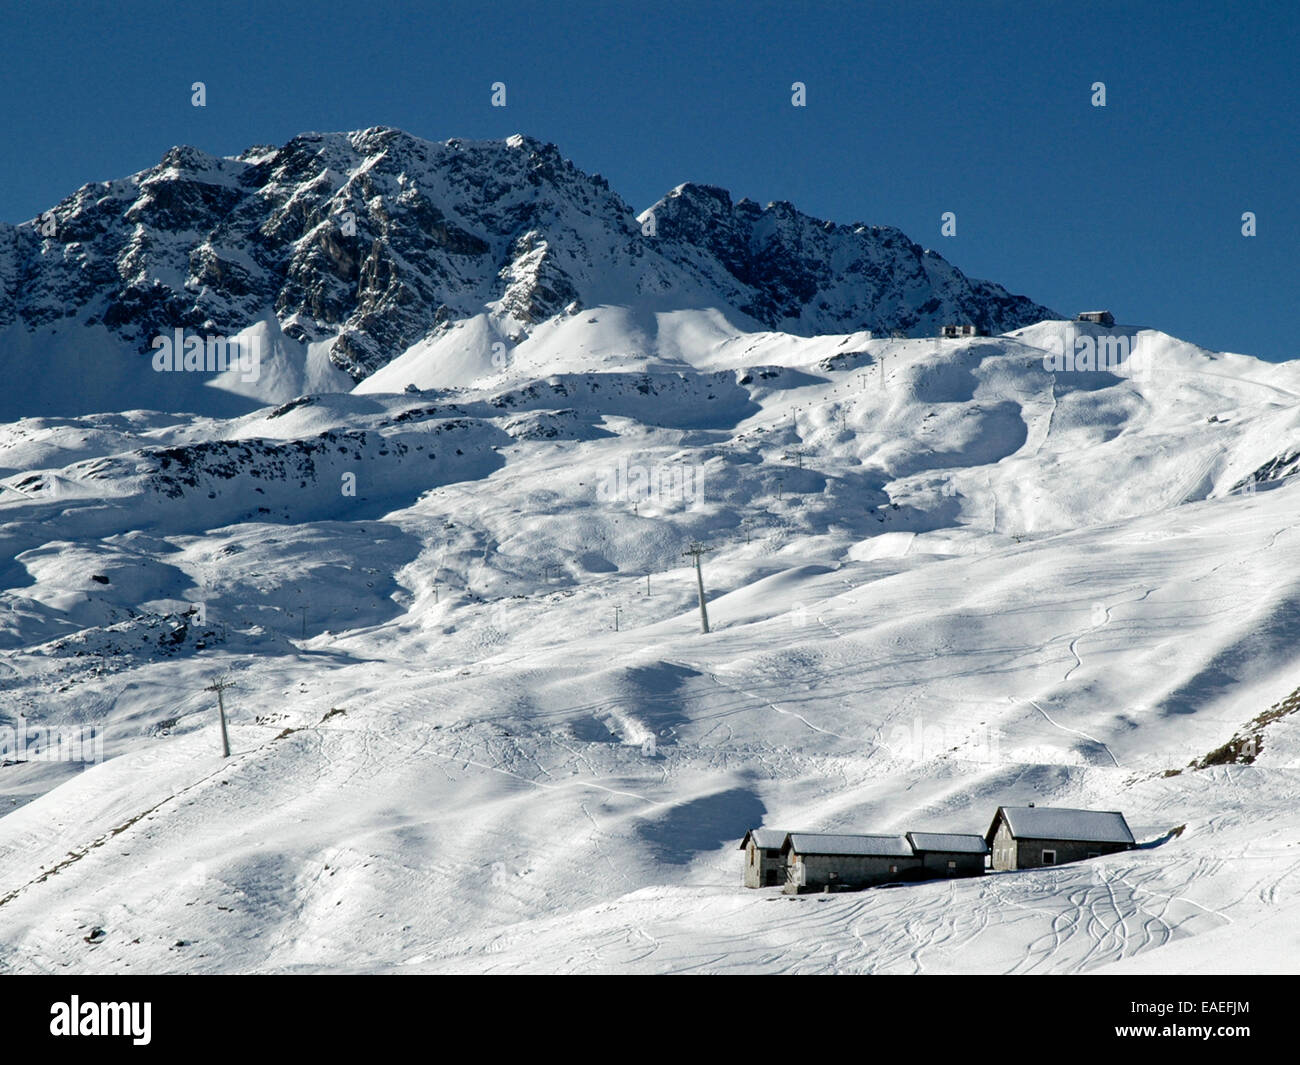 Hiver neige scène représentant des bâtiments couverts de neige en premier plan, des sentiers de ski et les montagnes en arrière-plan. Banque D'Images